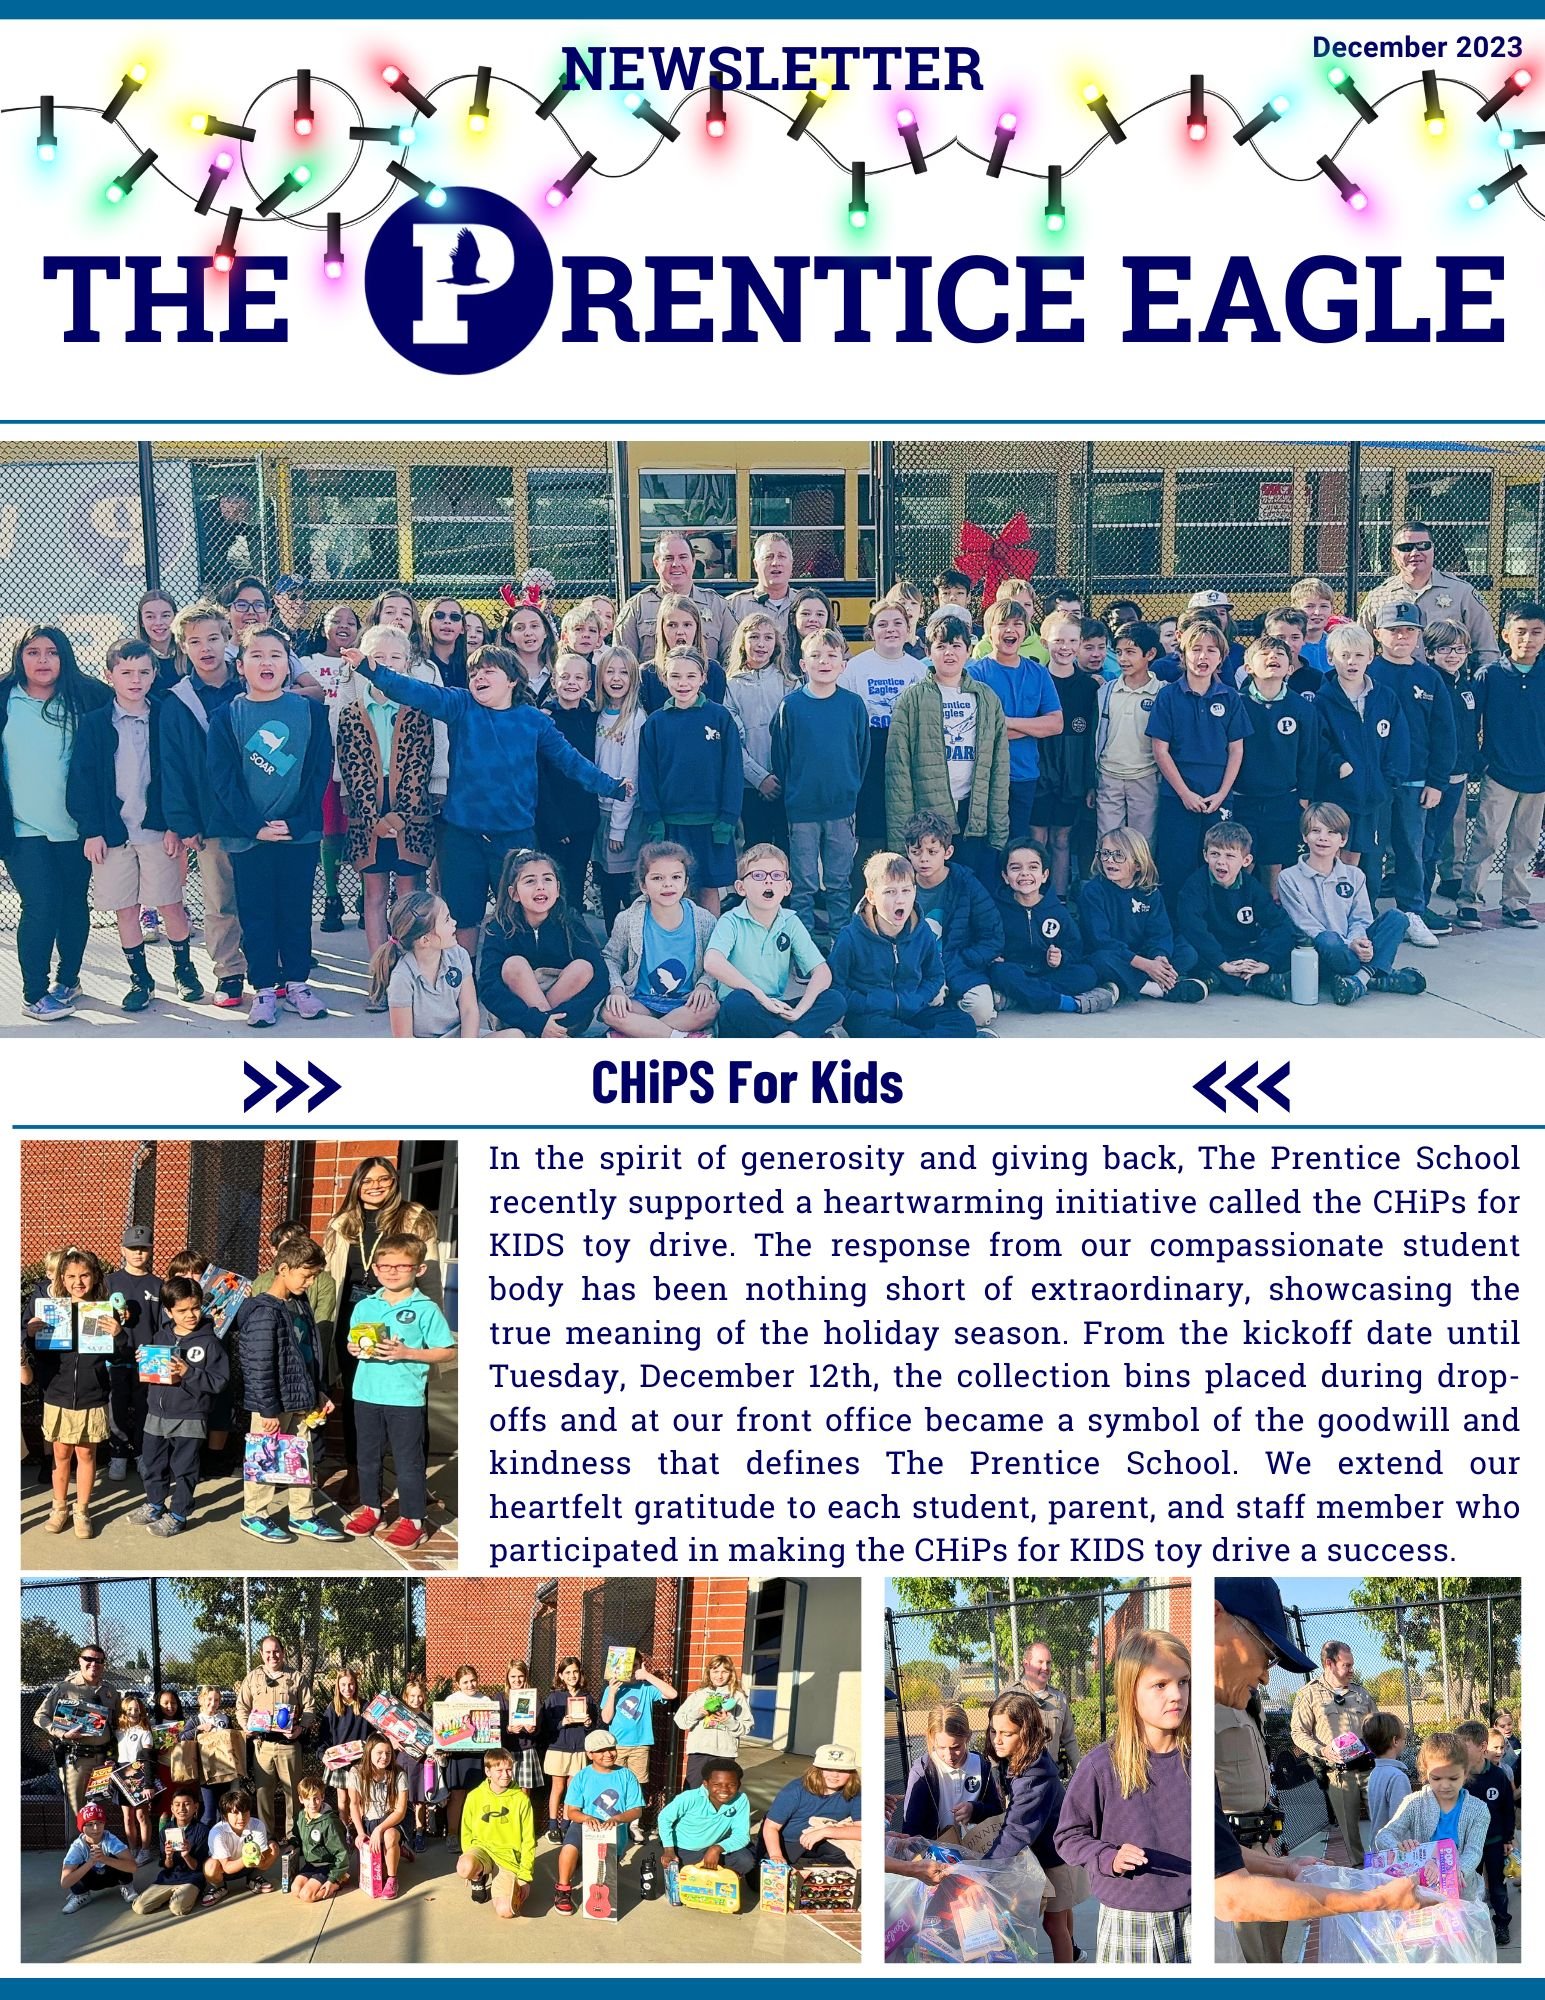 The Prentice Eagle Dec 23